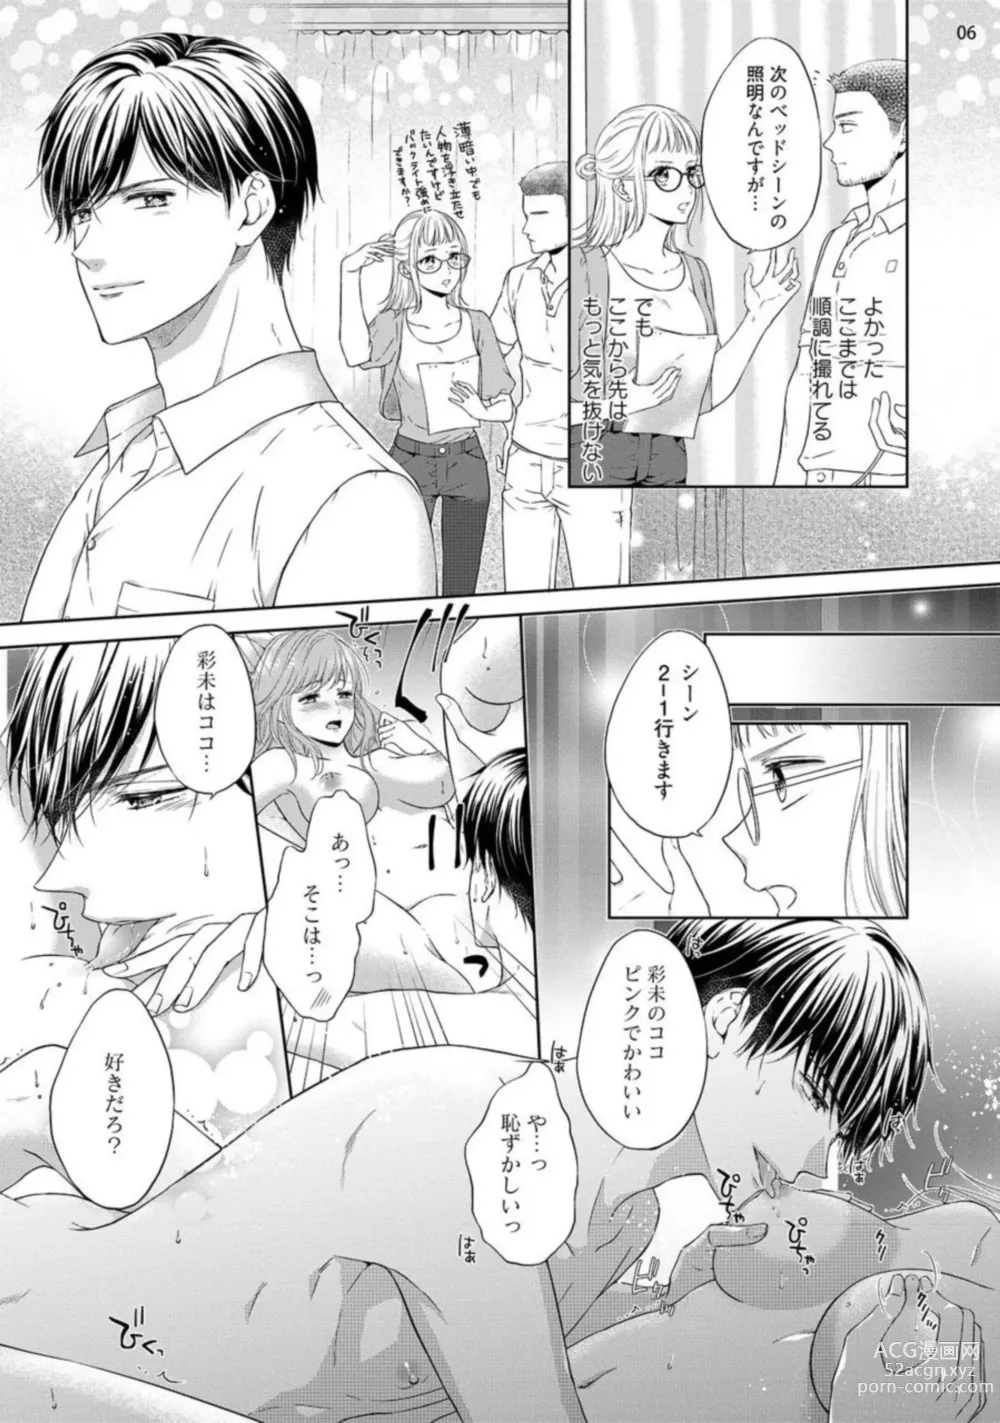 Page 7 of manga Erotikkufirumu Shojo Kantoku wa Sekushī Danyū no Gokujō Teku ni Nurete 3